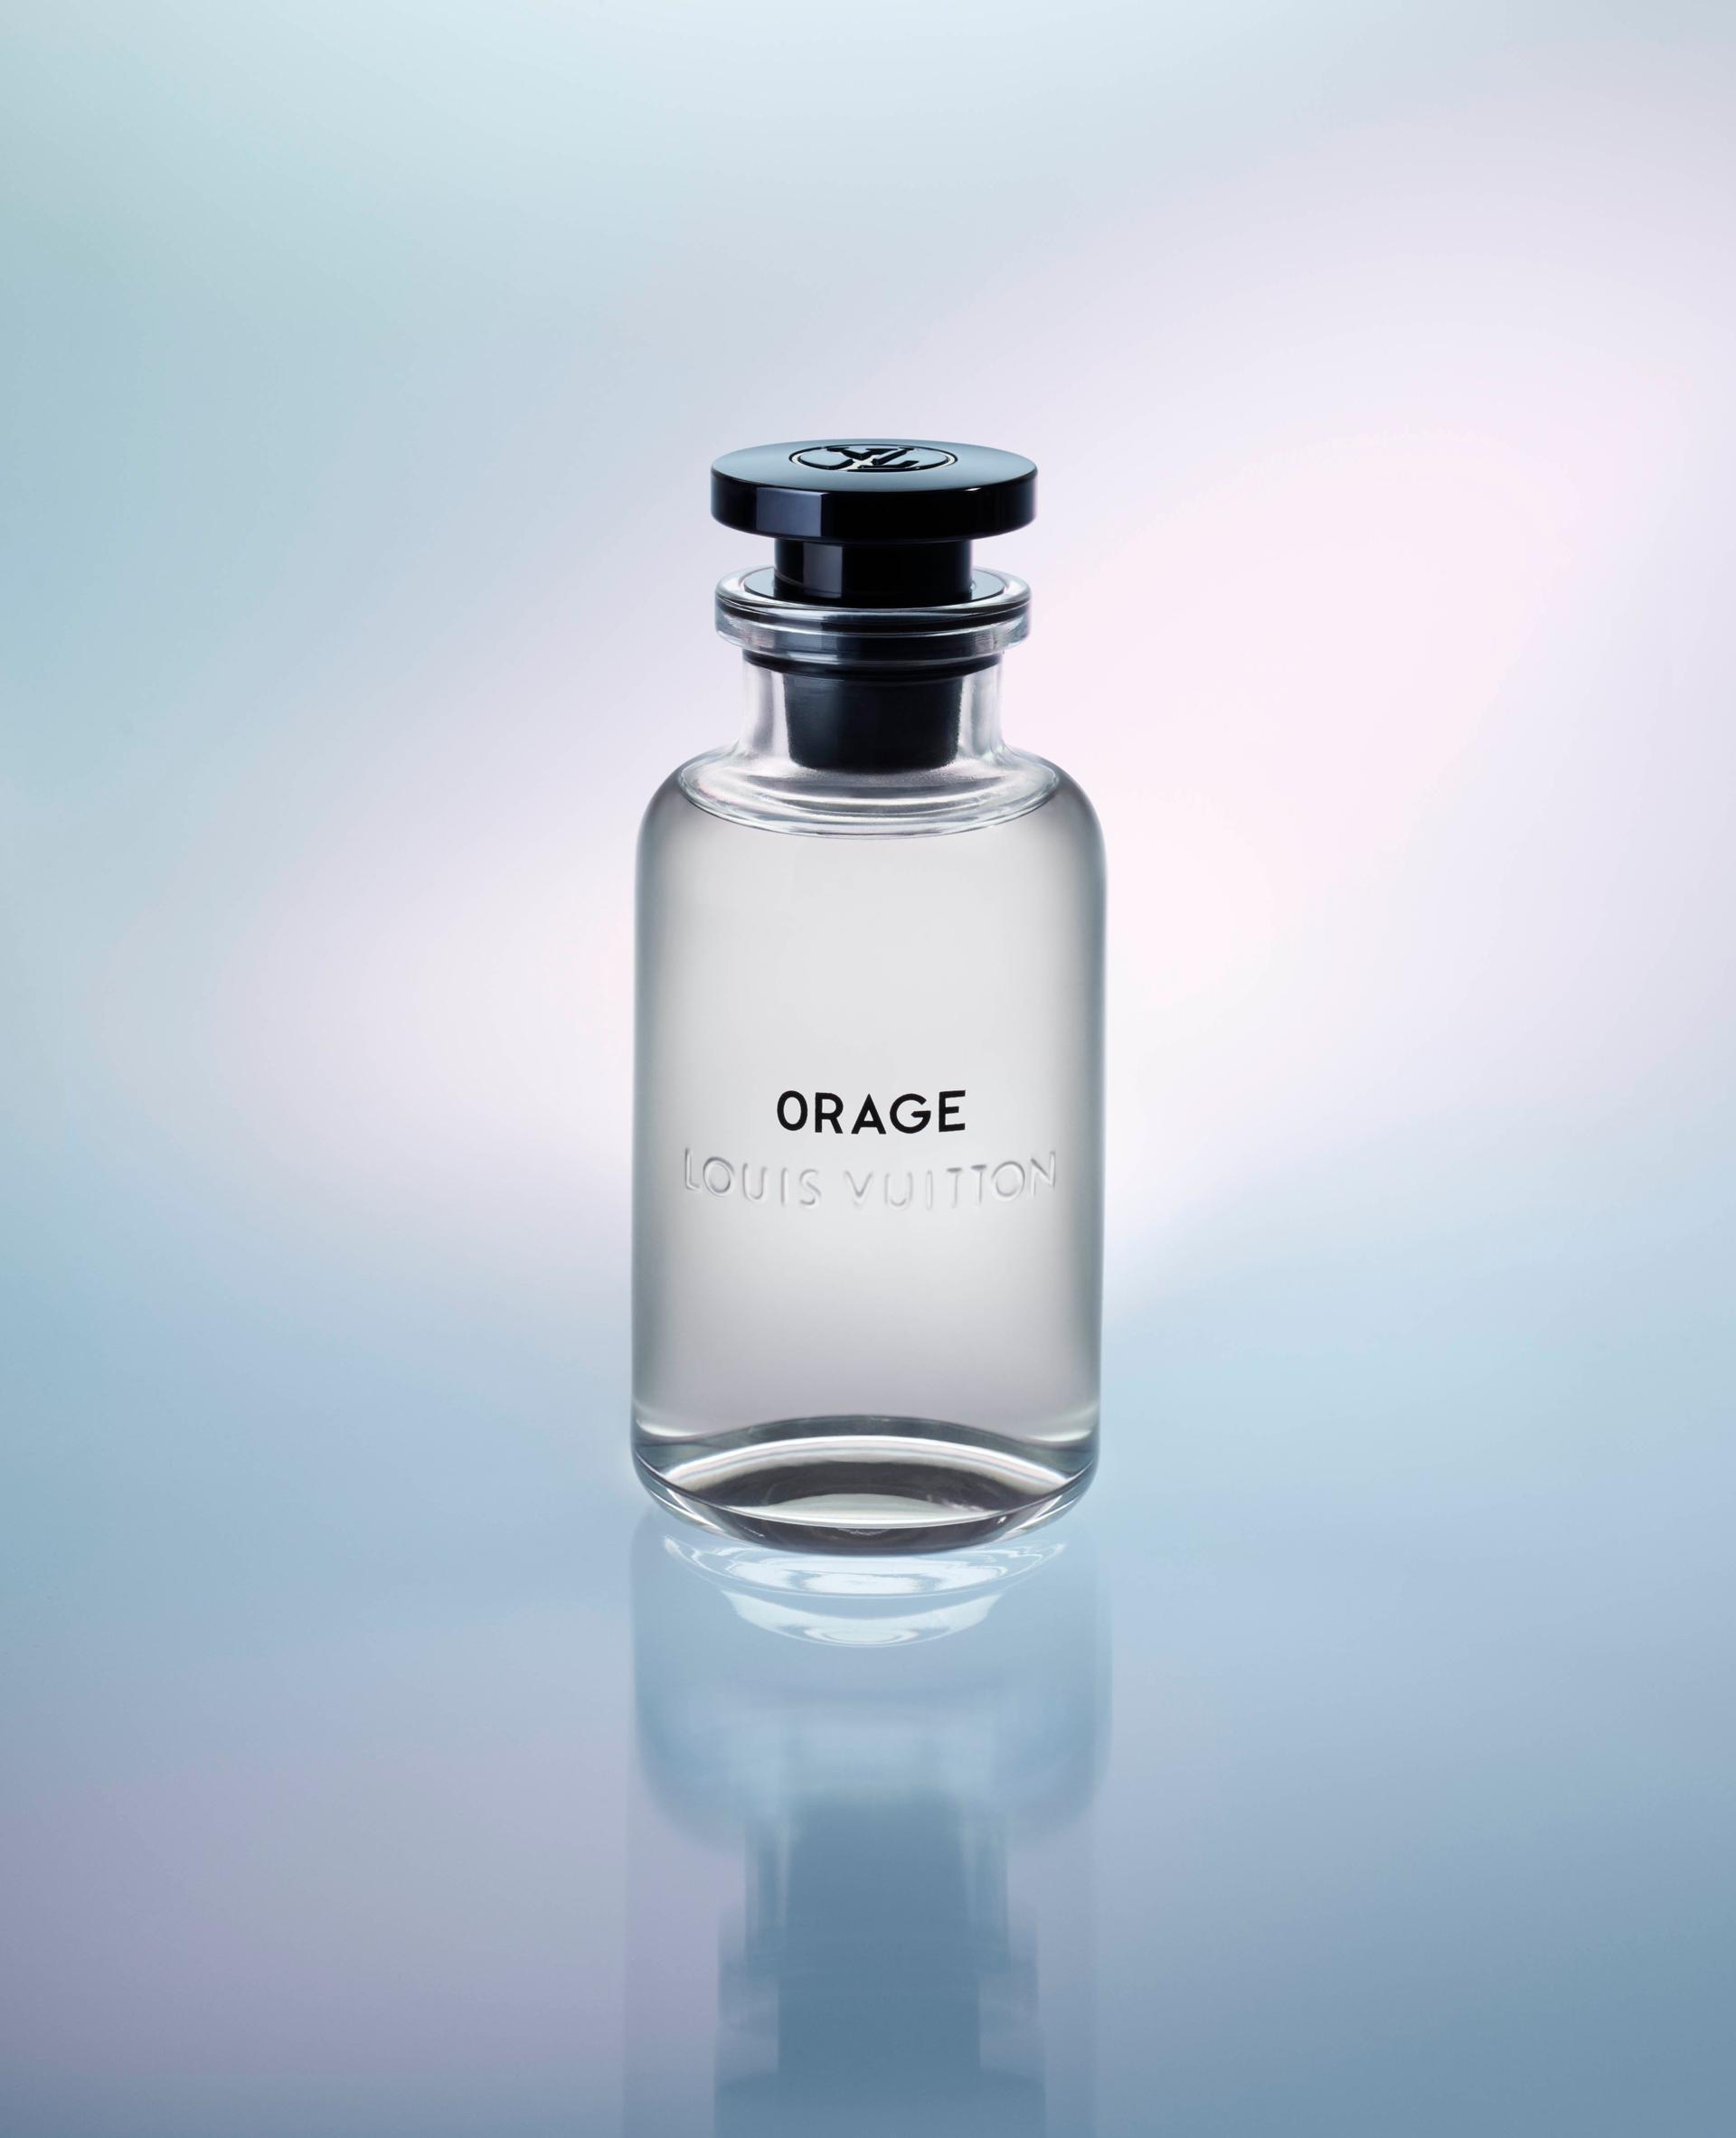 Louis Vuitton Announces It Will Launch Six Men's Fragrances